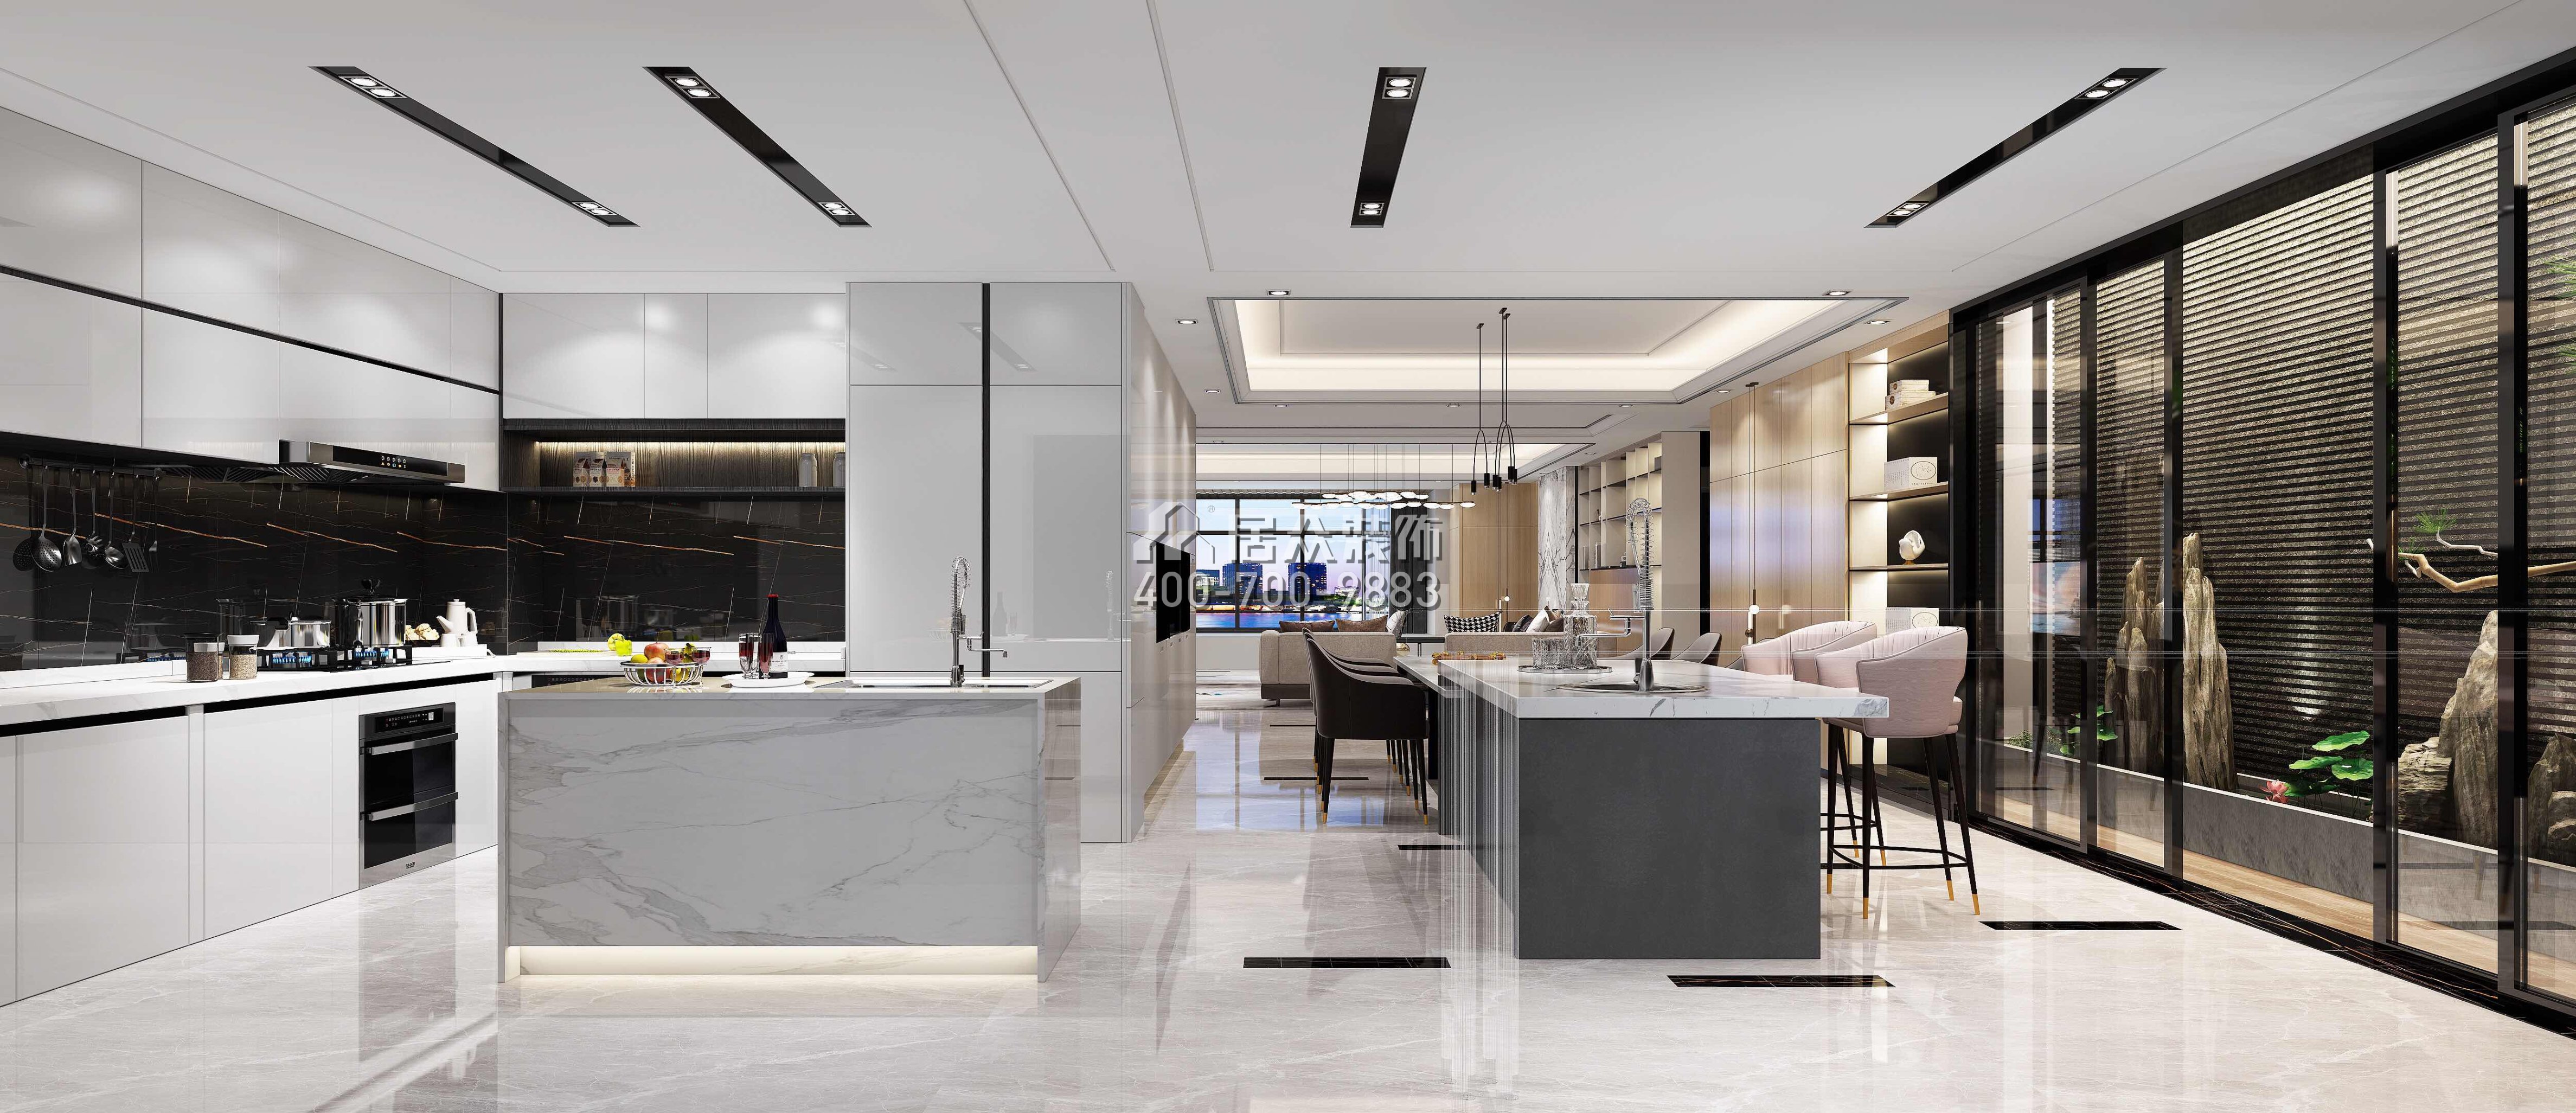 五洲花城330平方米中式风格平层户型餐厅装修效果图